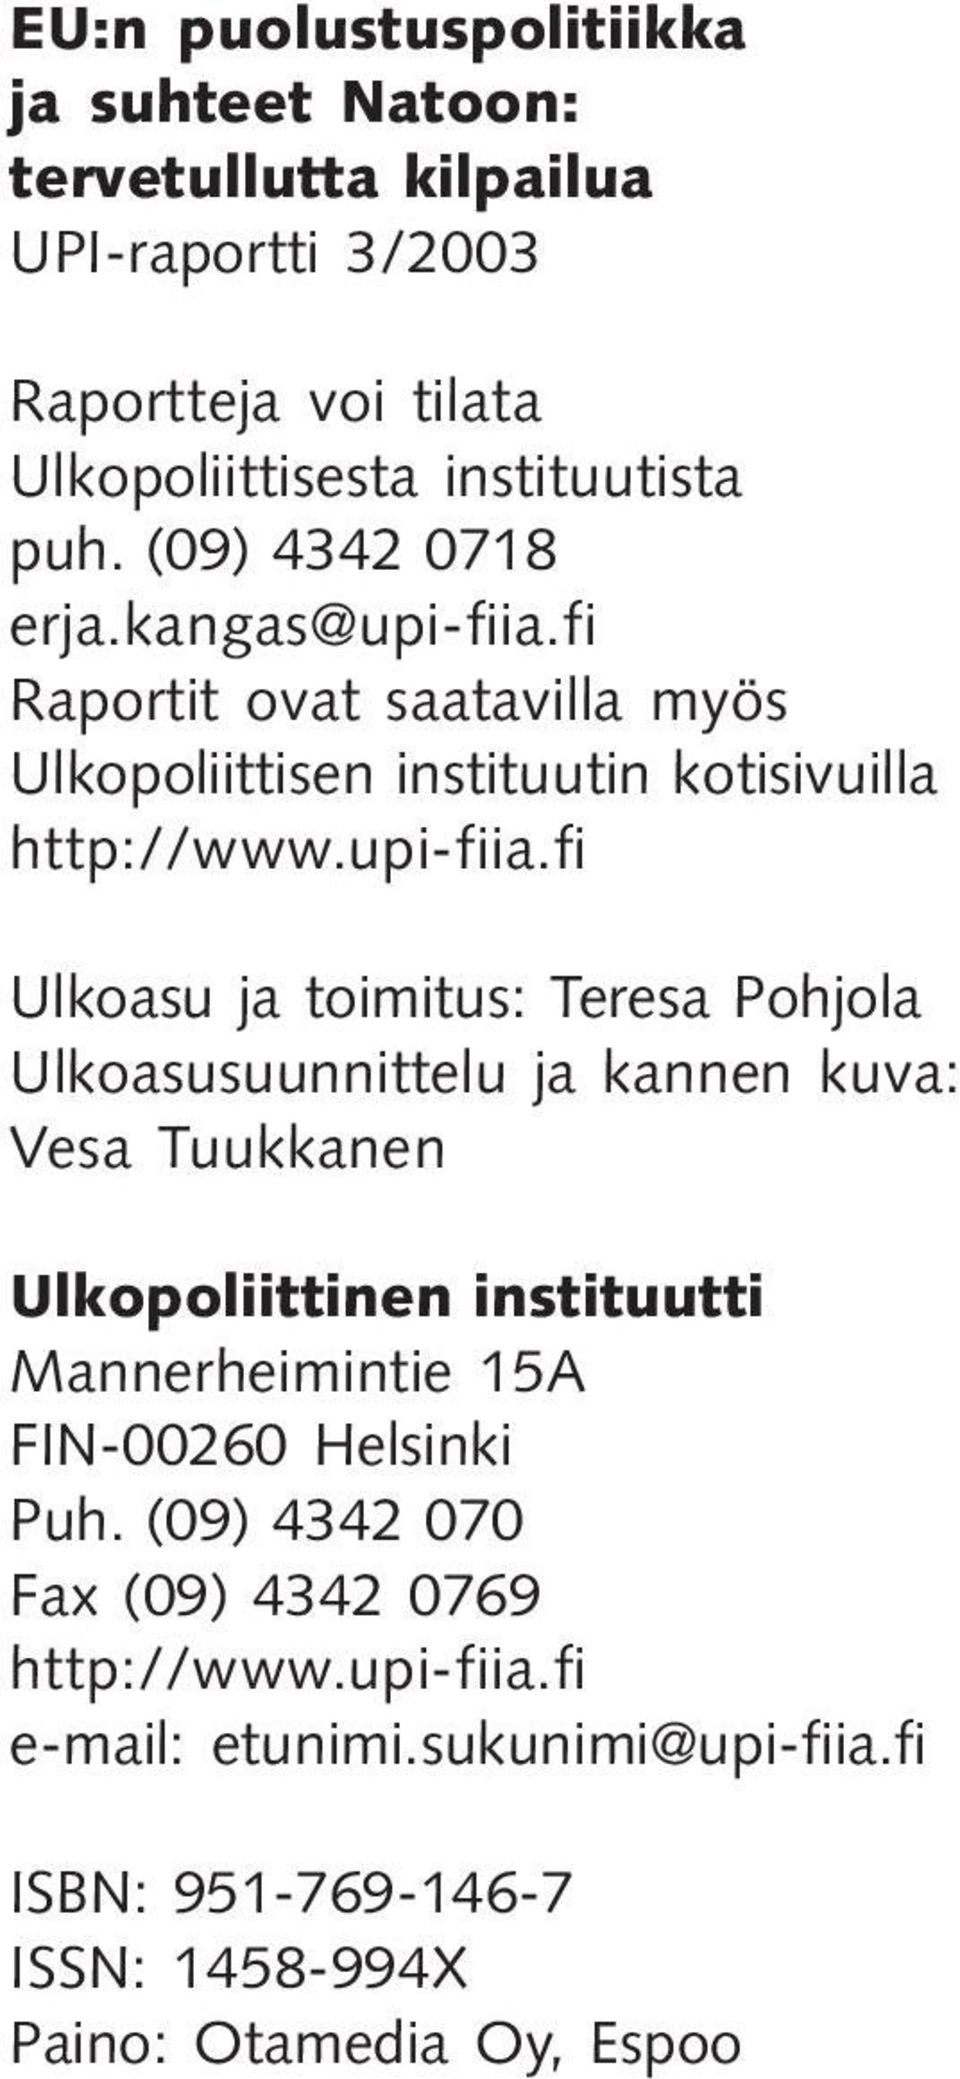 fi Raportit ovat saatavilla myös Ulkopoliittisen instituutin kotisivuilla http://www.upi-fiia.